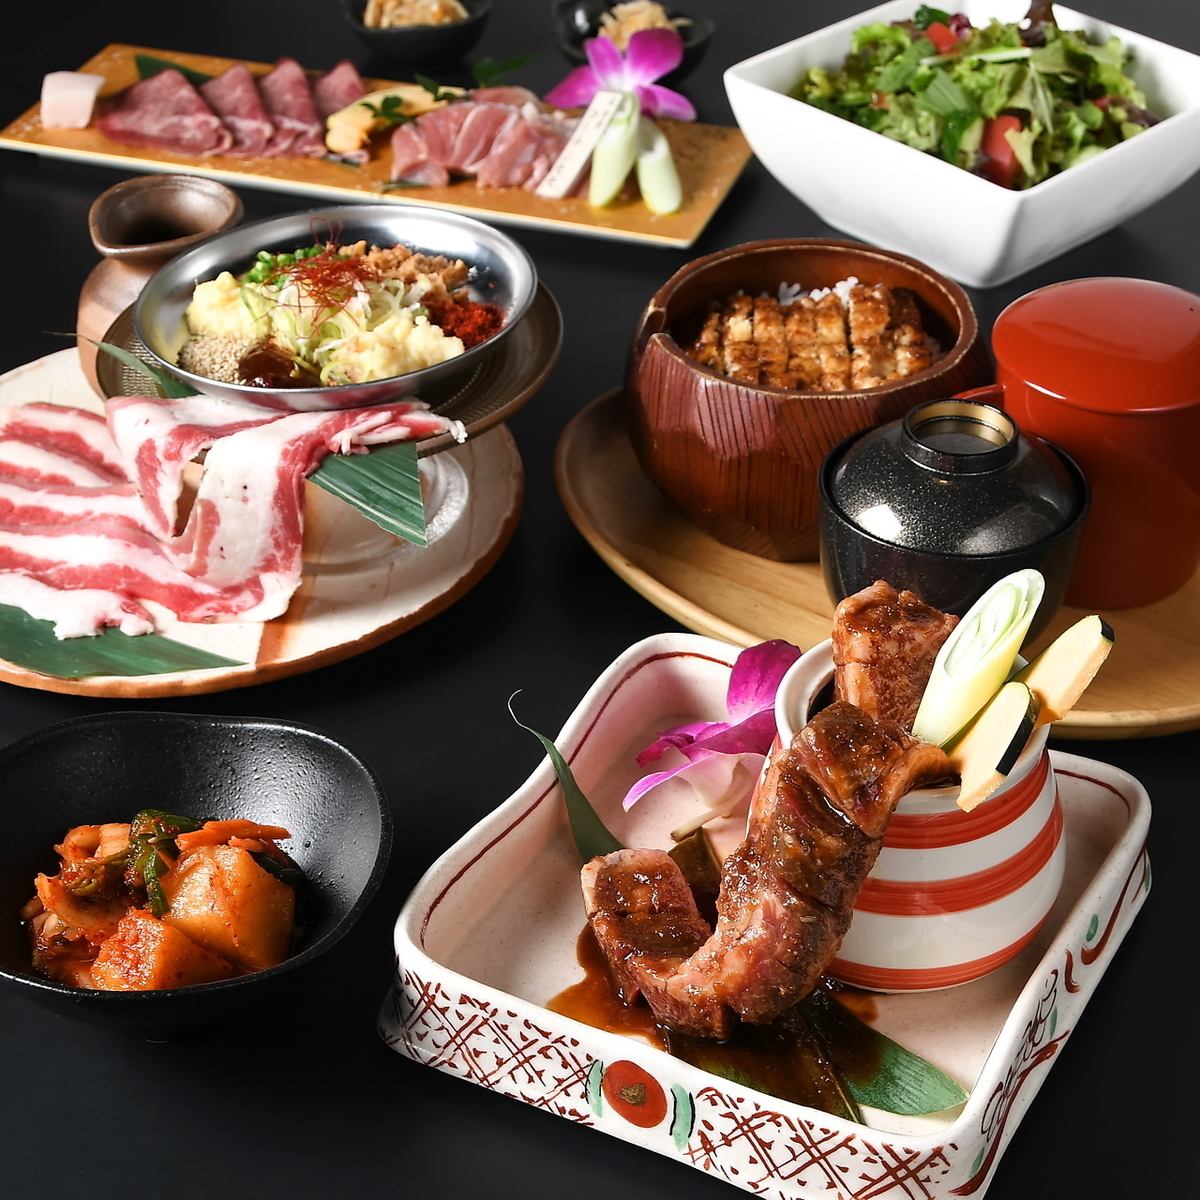 附无限畅饮♪ 可以以超值价格享用三河牛黄金、松阪牛等优质肉的套餐餐厅。